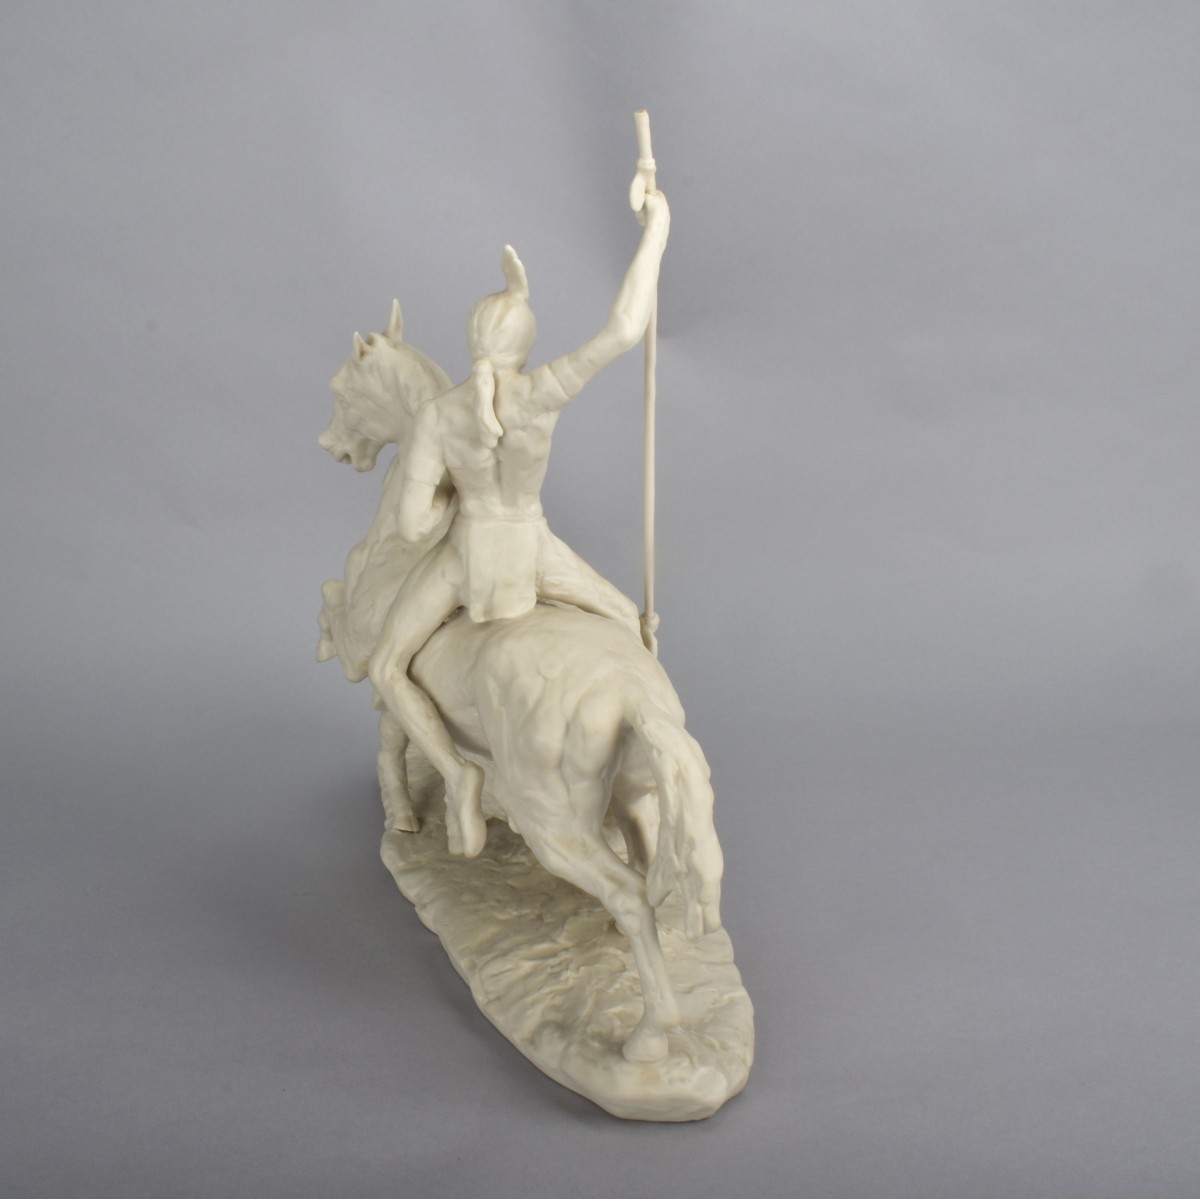 Lg. Ispanky "The Hunt" Figurine